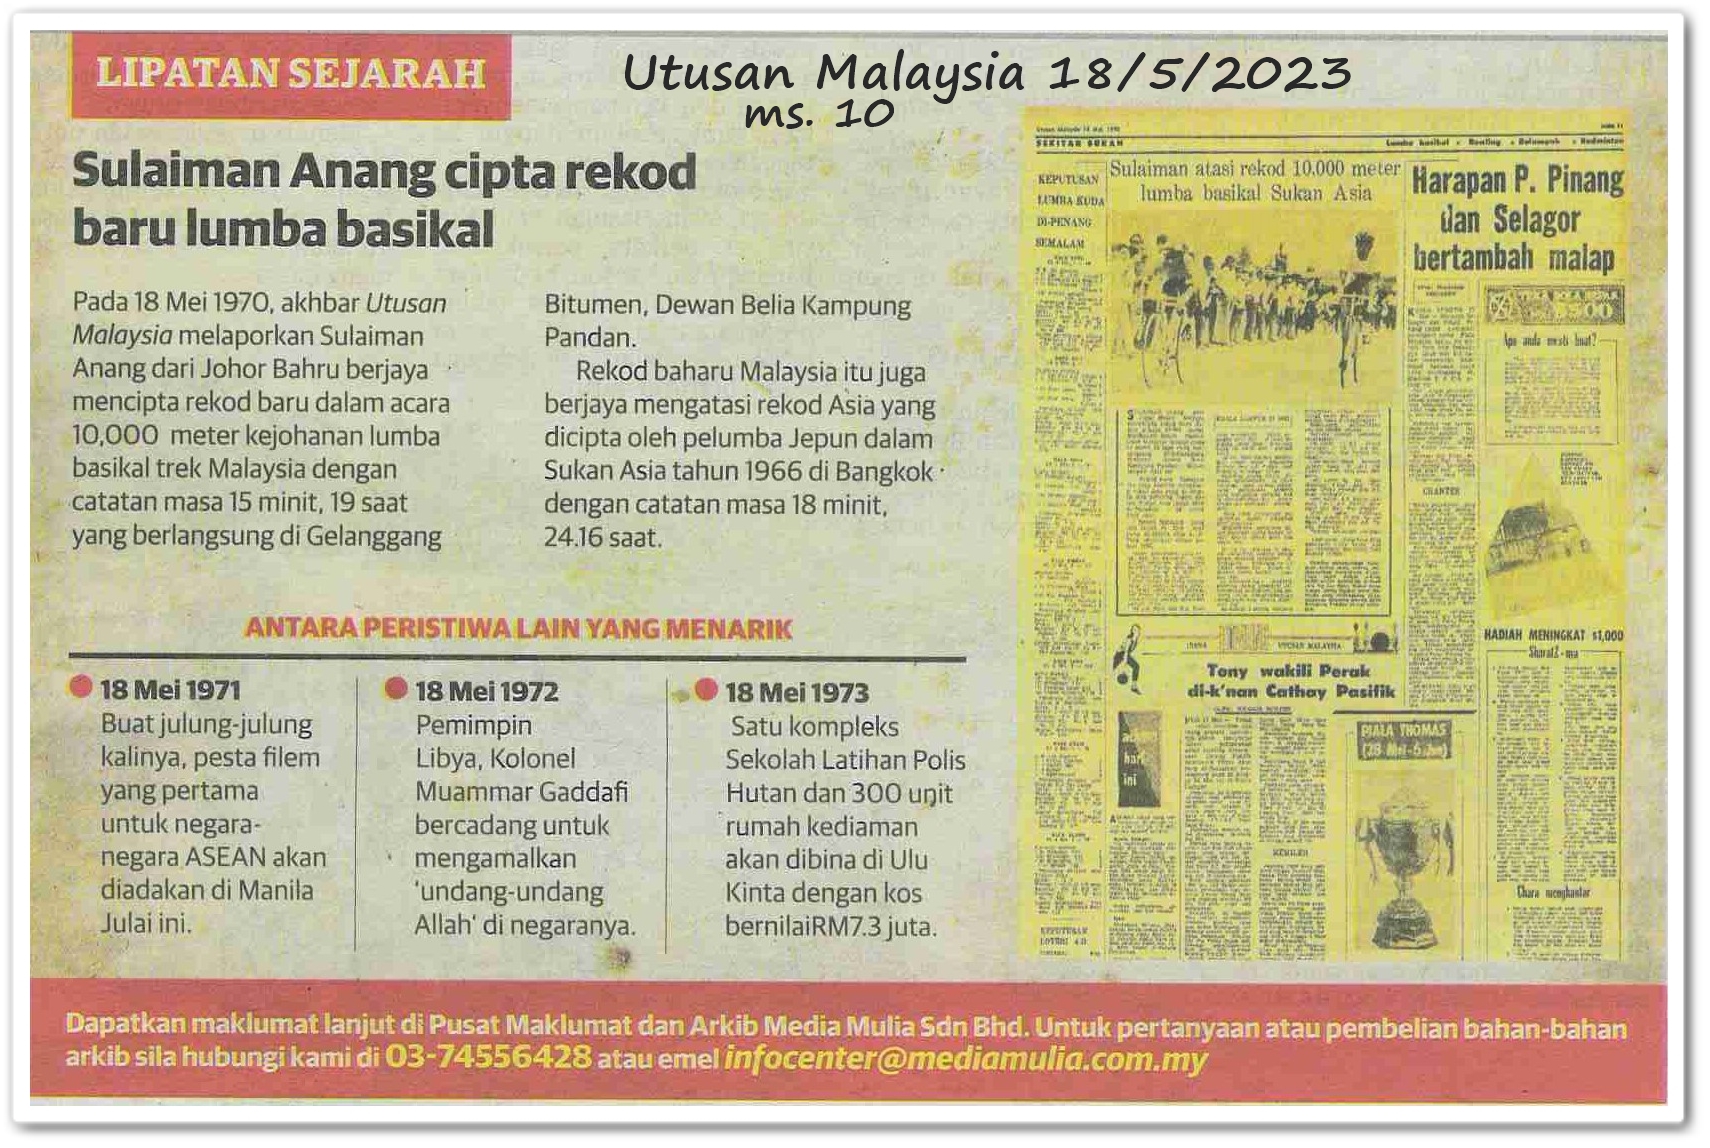 Lipatan sejarah 18 Mei - Keratan akhbar Utusan Malaysia 18 Mei 2023